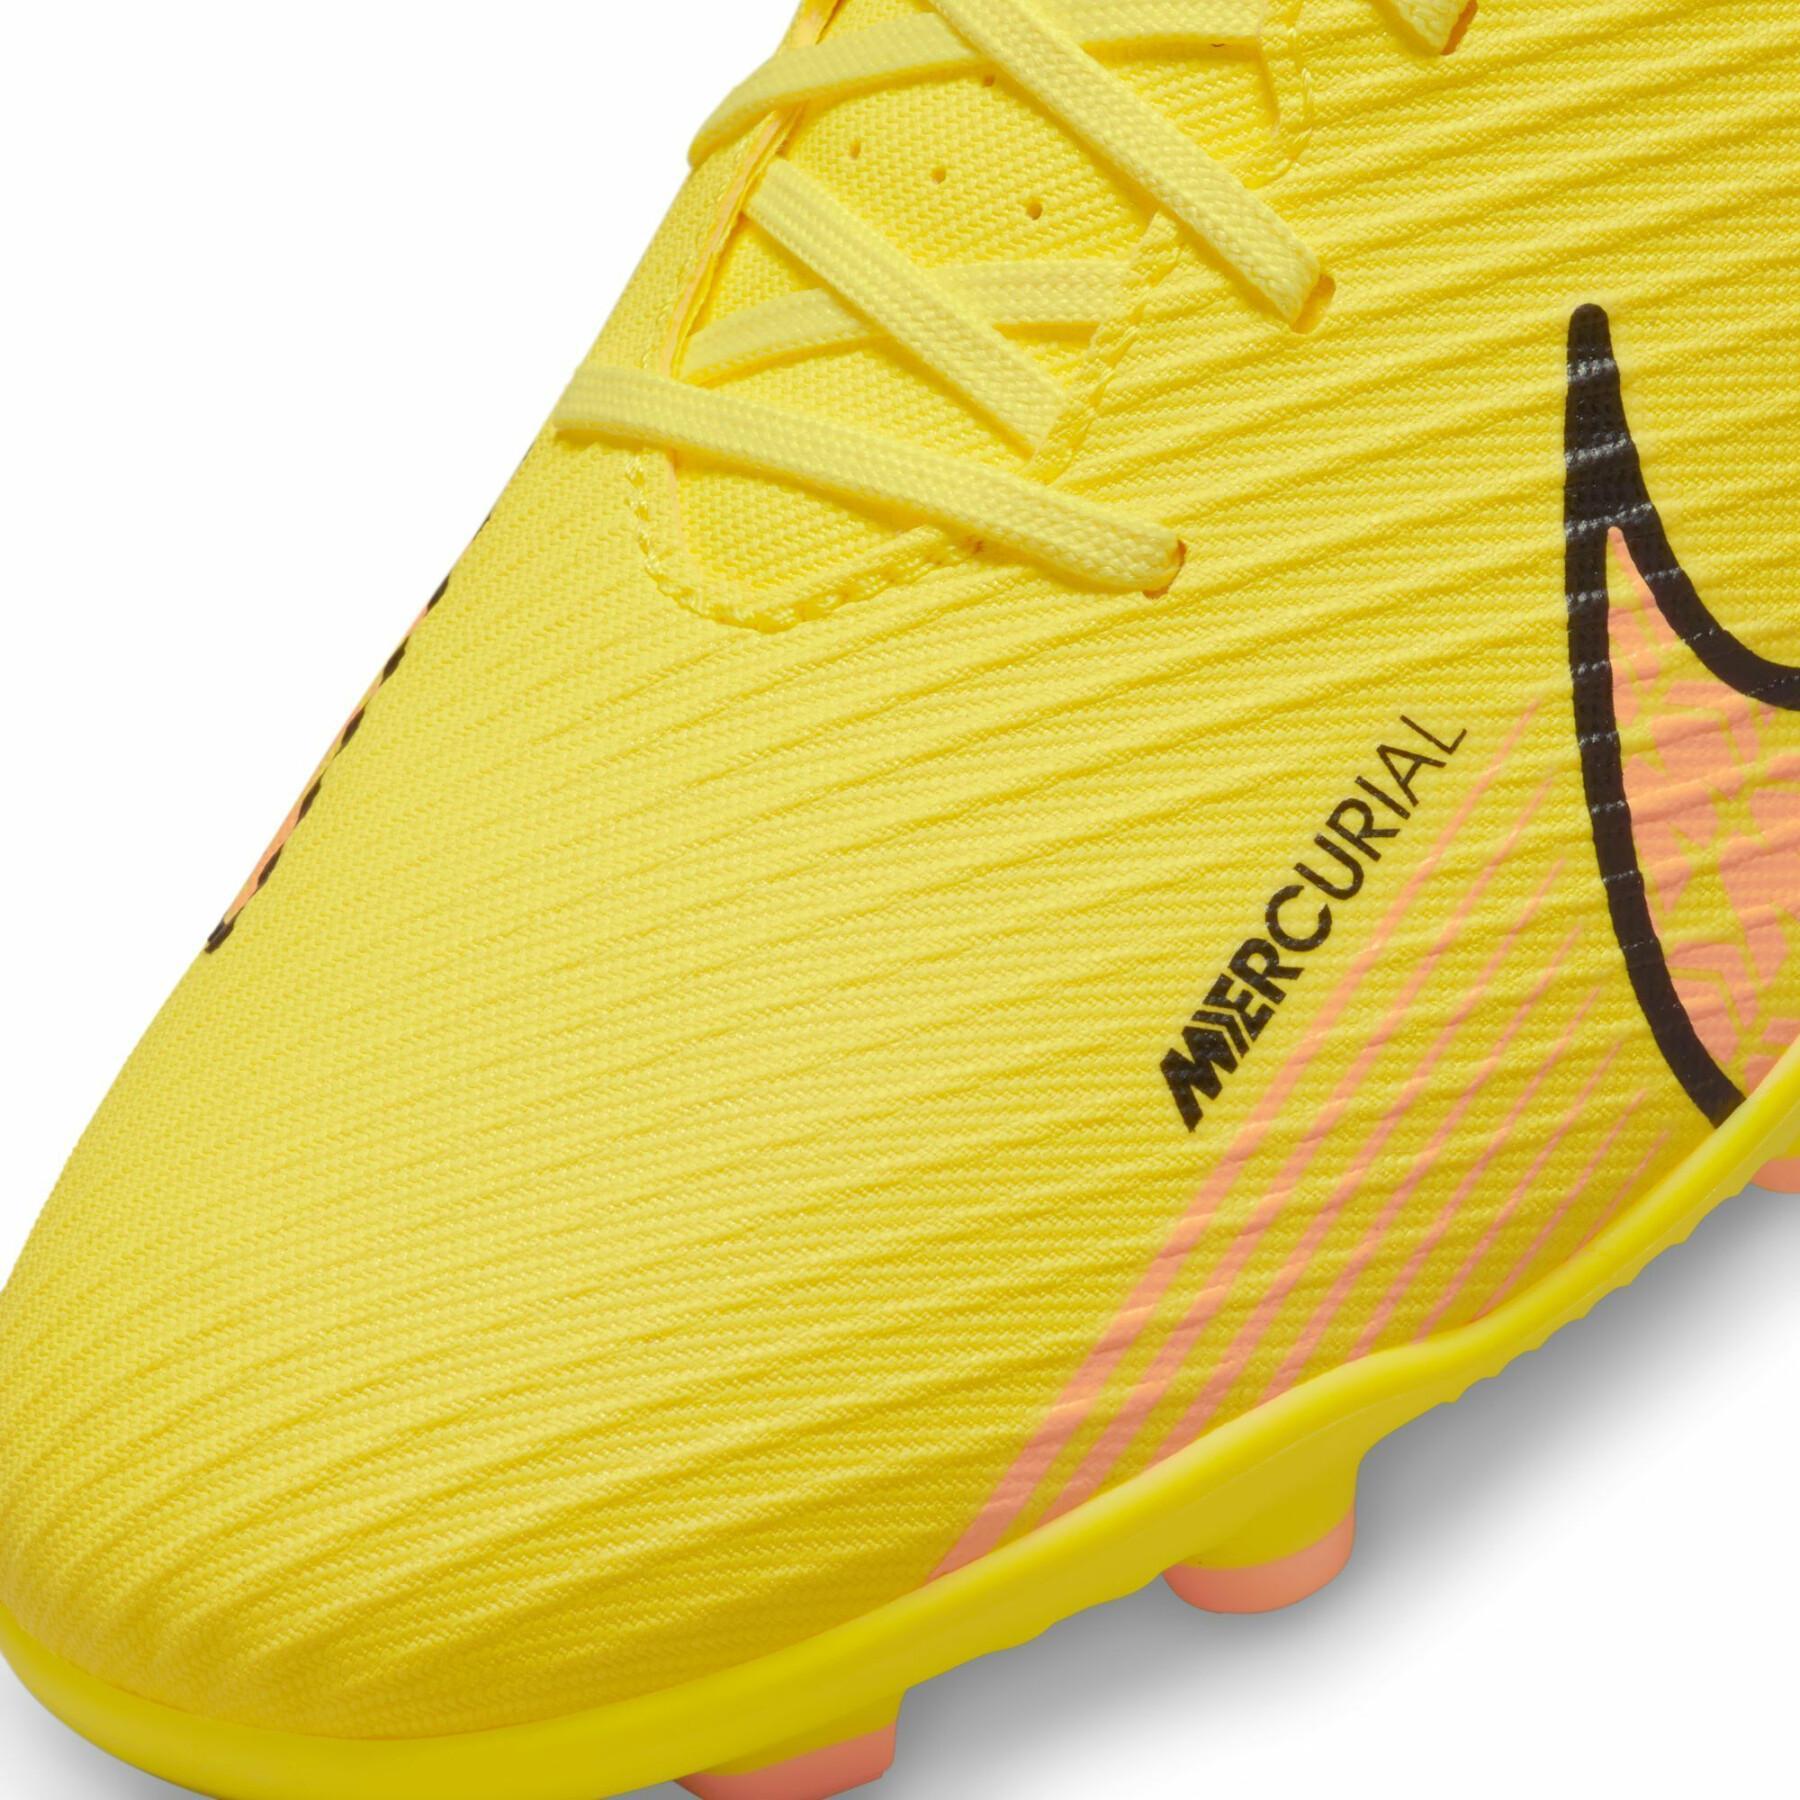 Sapatos de futebol Nike Mercurial Vapor 15 Club MG - Lucent Pack